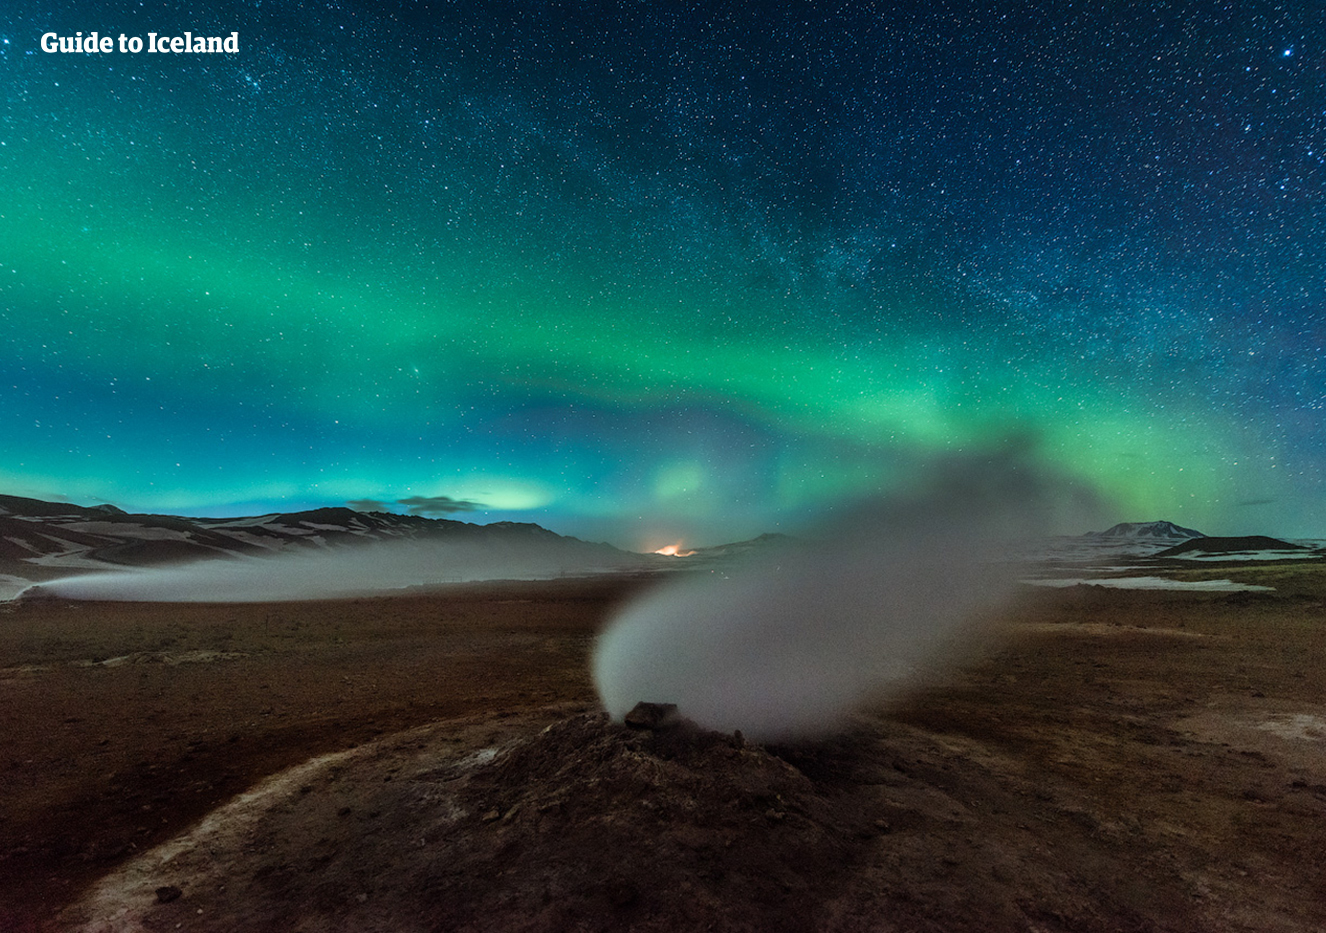 Zorza polarna i gwiaździste niebo nad ujściem pary w obszarze geotermalnym w pobliżu jeziora Mývatn.